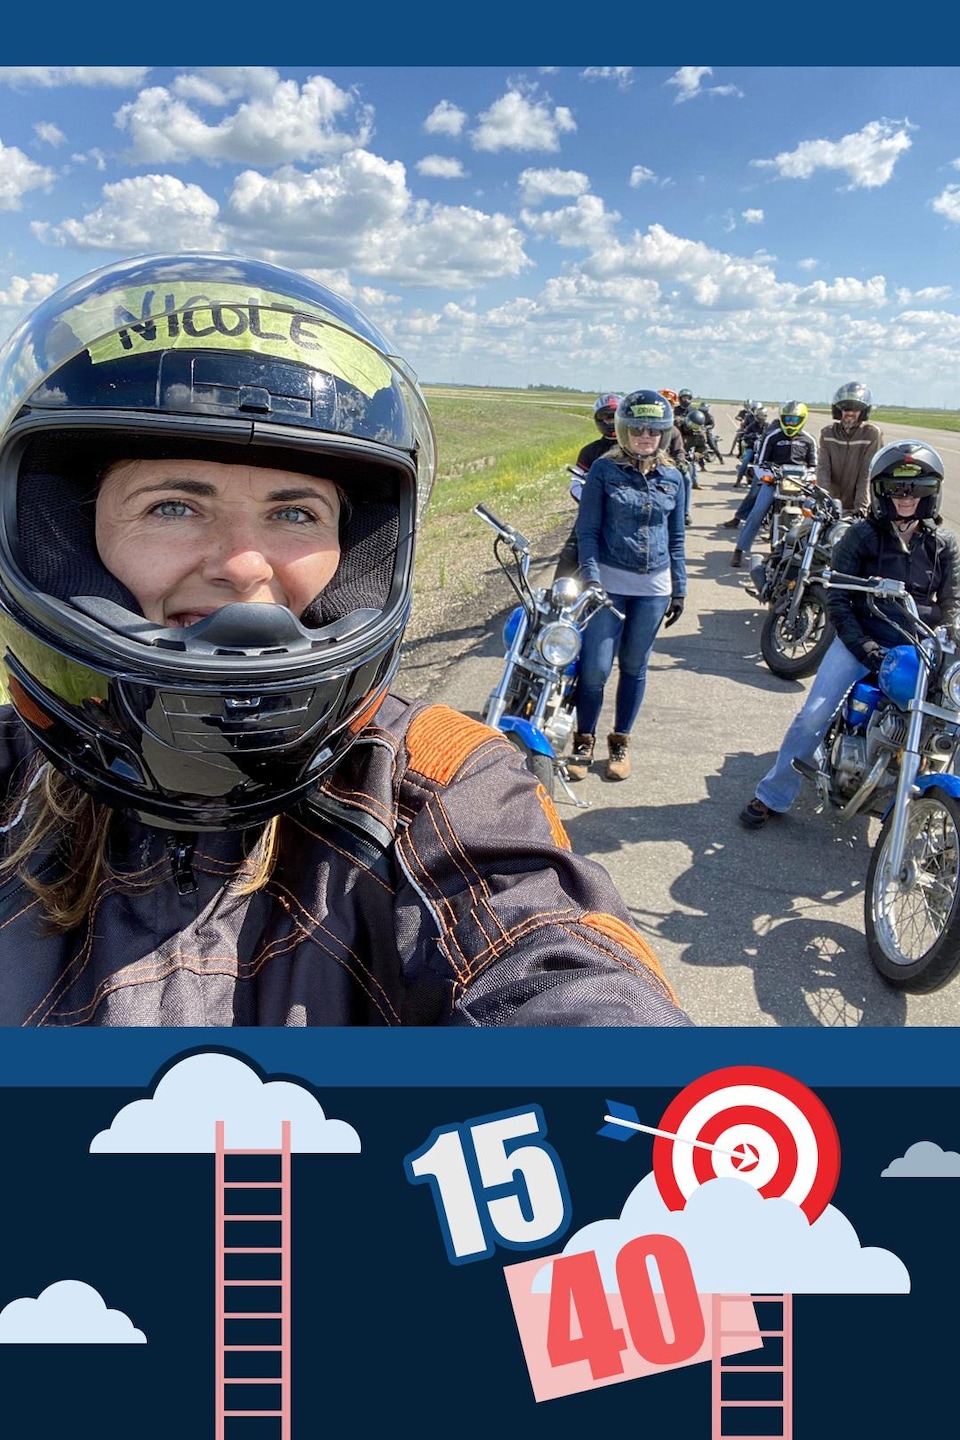 La Fureteuse fransaskoise prend un ego portrait assise sur sa moto avec un groupe de motocycliste derrière elle.